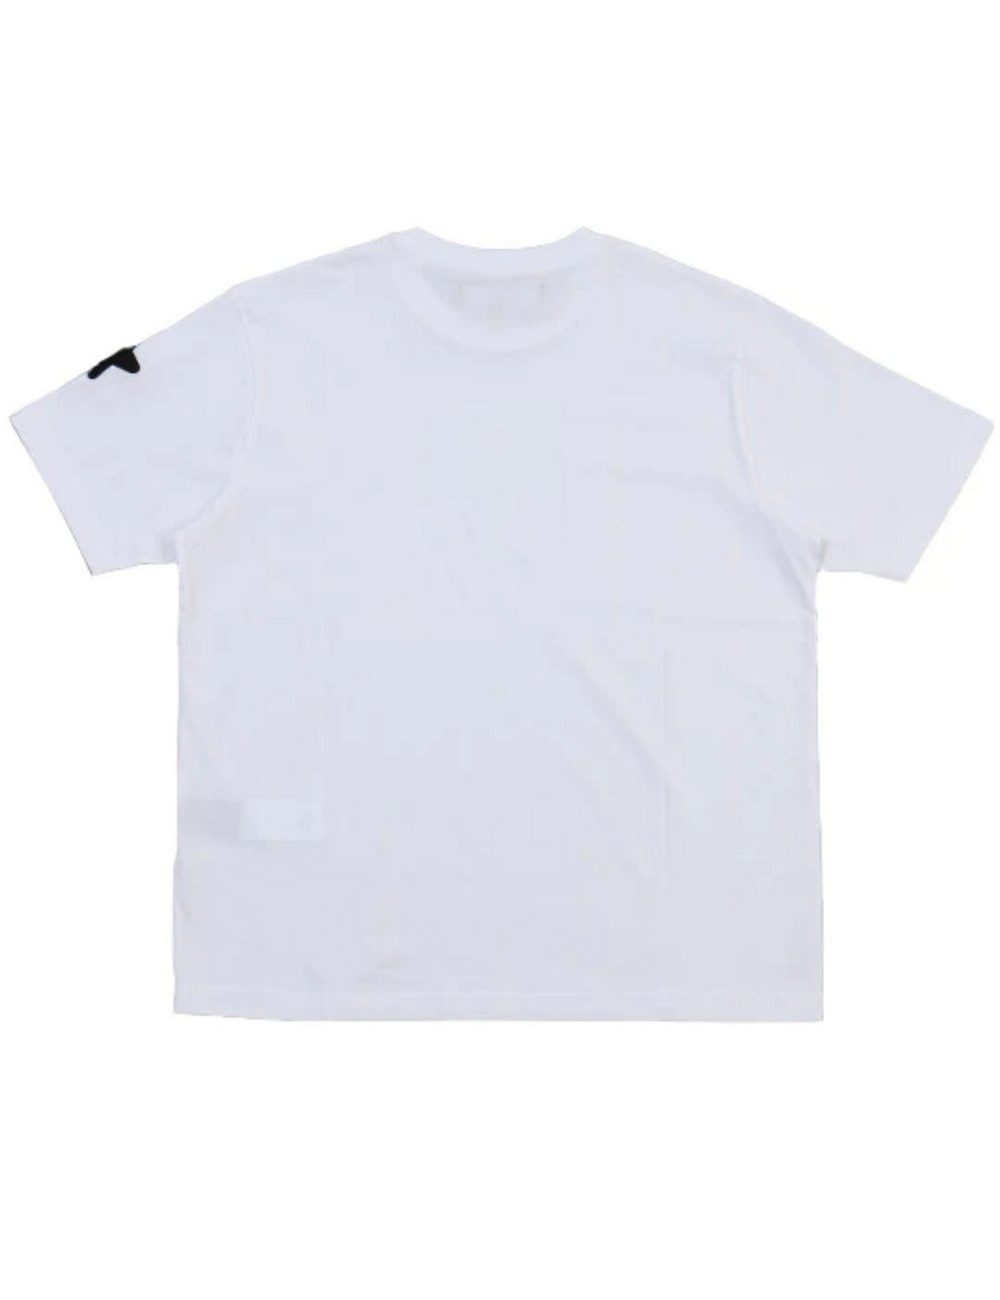 レインボースカルTシャツ(半袖) / RAINBOW SKULL T SHIRT 詳細画像 ホワイト 2